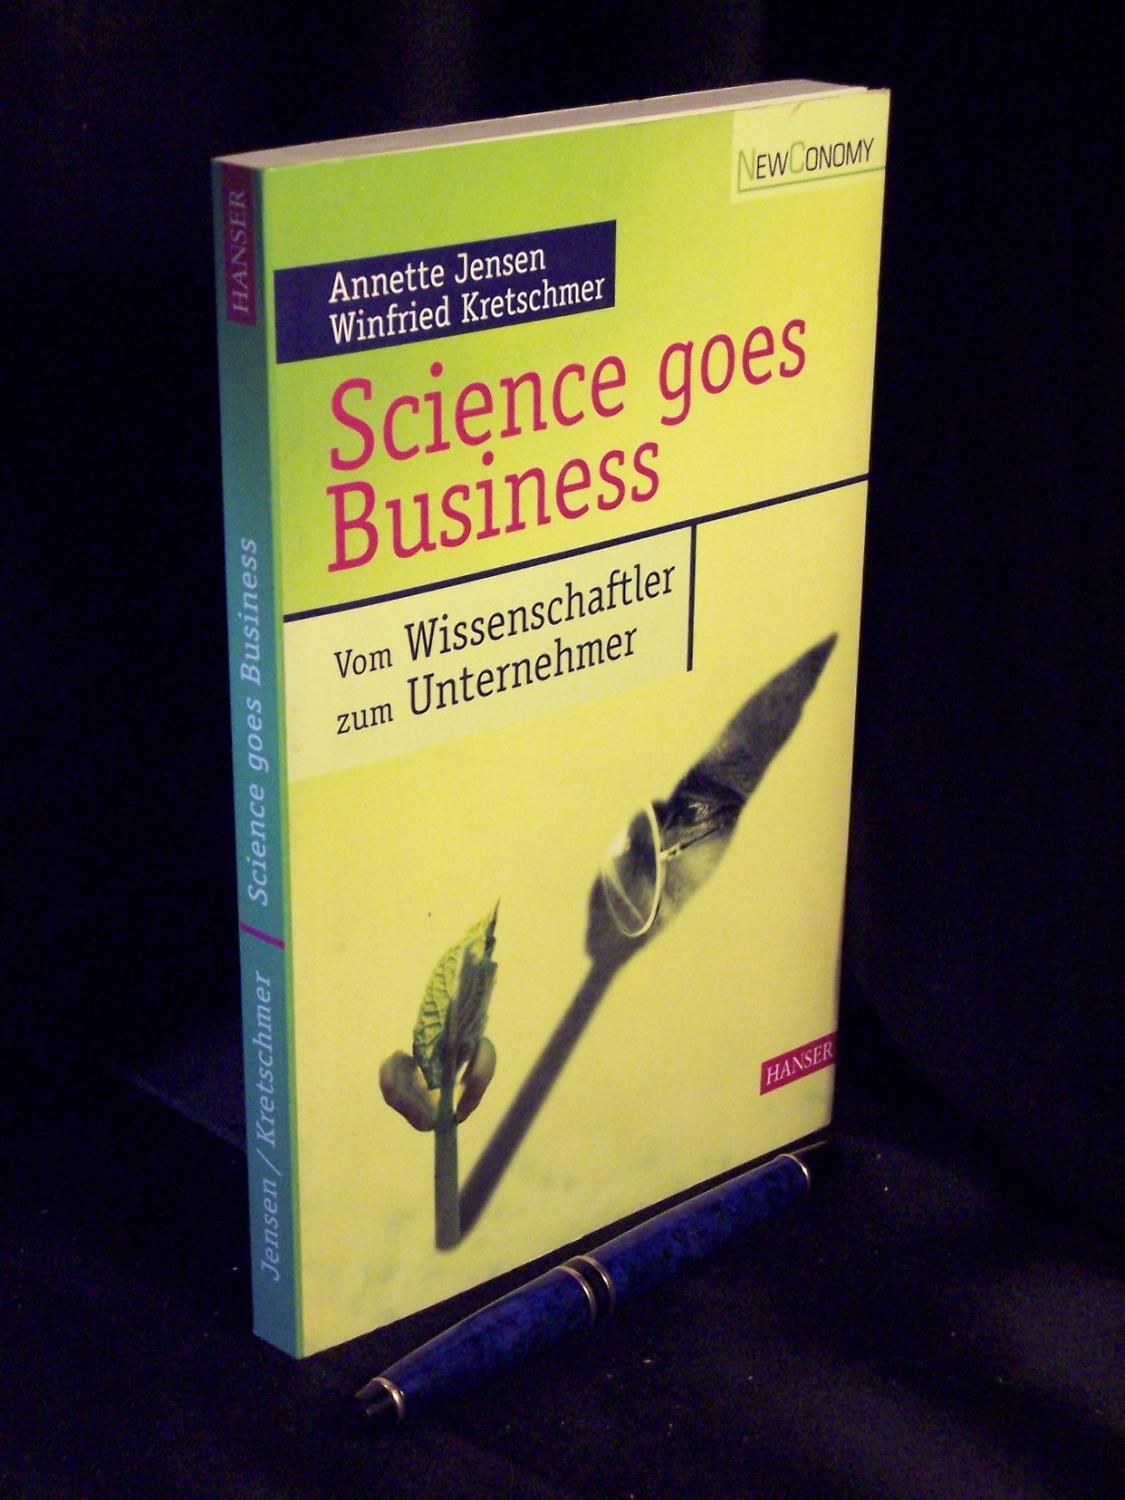 Science goes Business - Vom Wissenschaftler zum Unternehmer - - Jensen, Annette und Winfried Kretschmer -